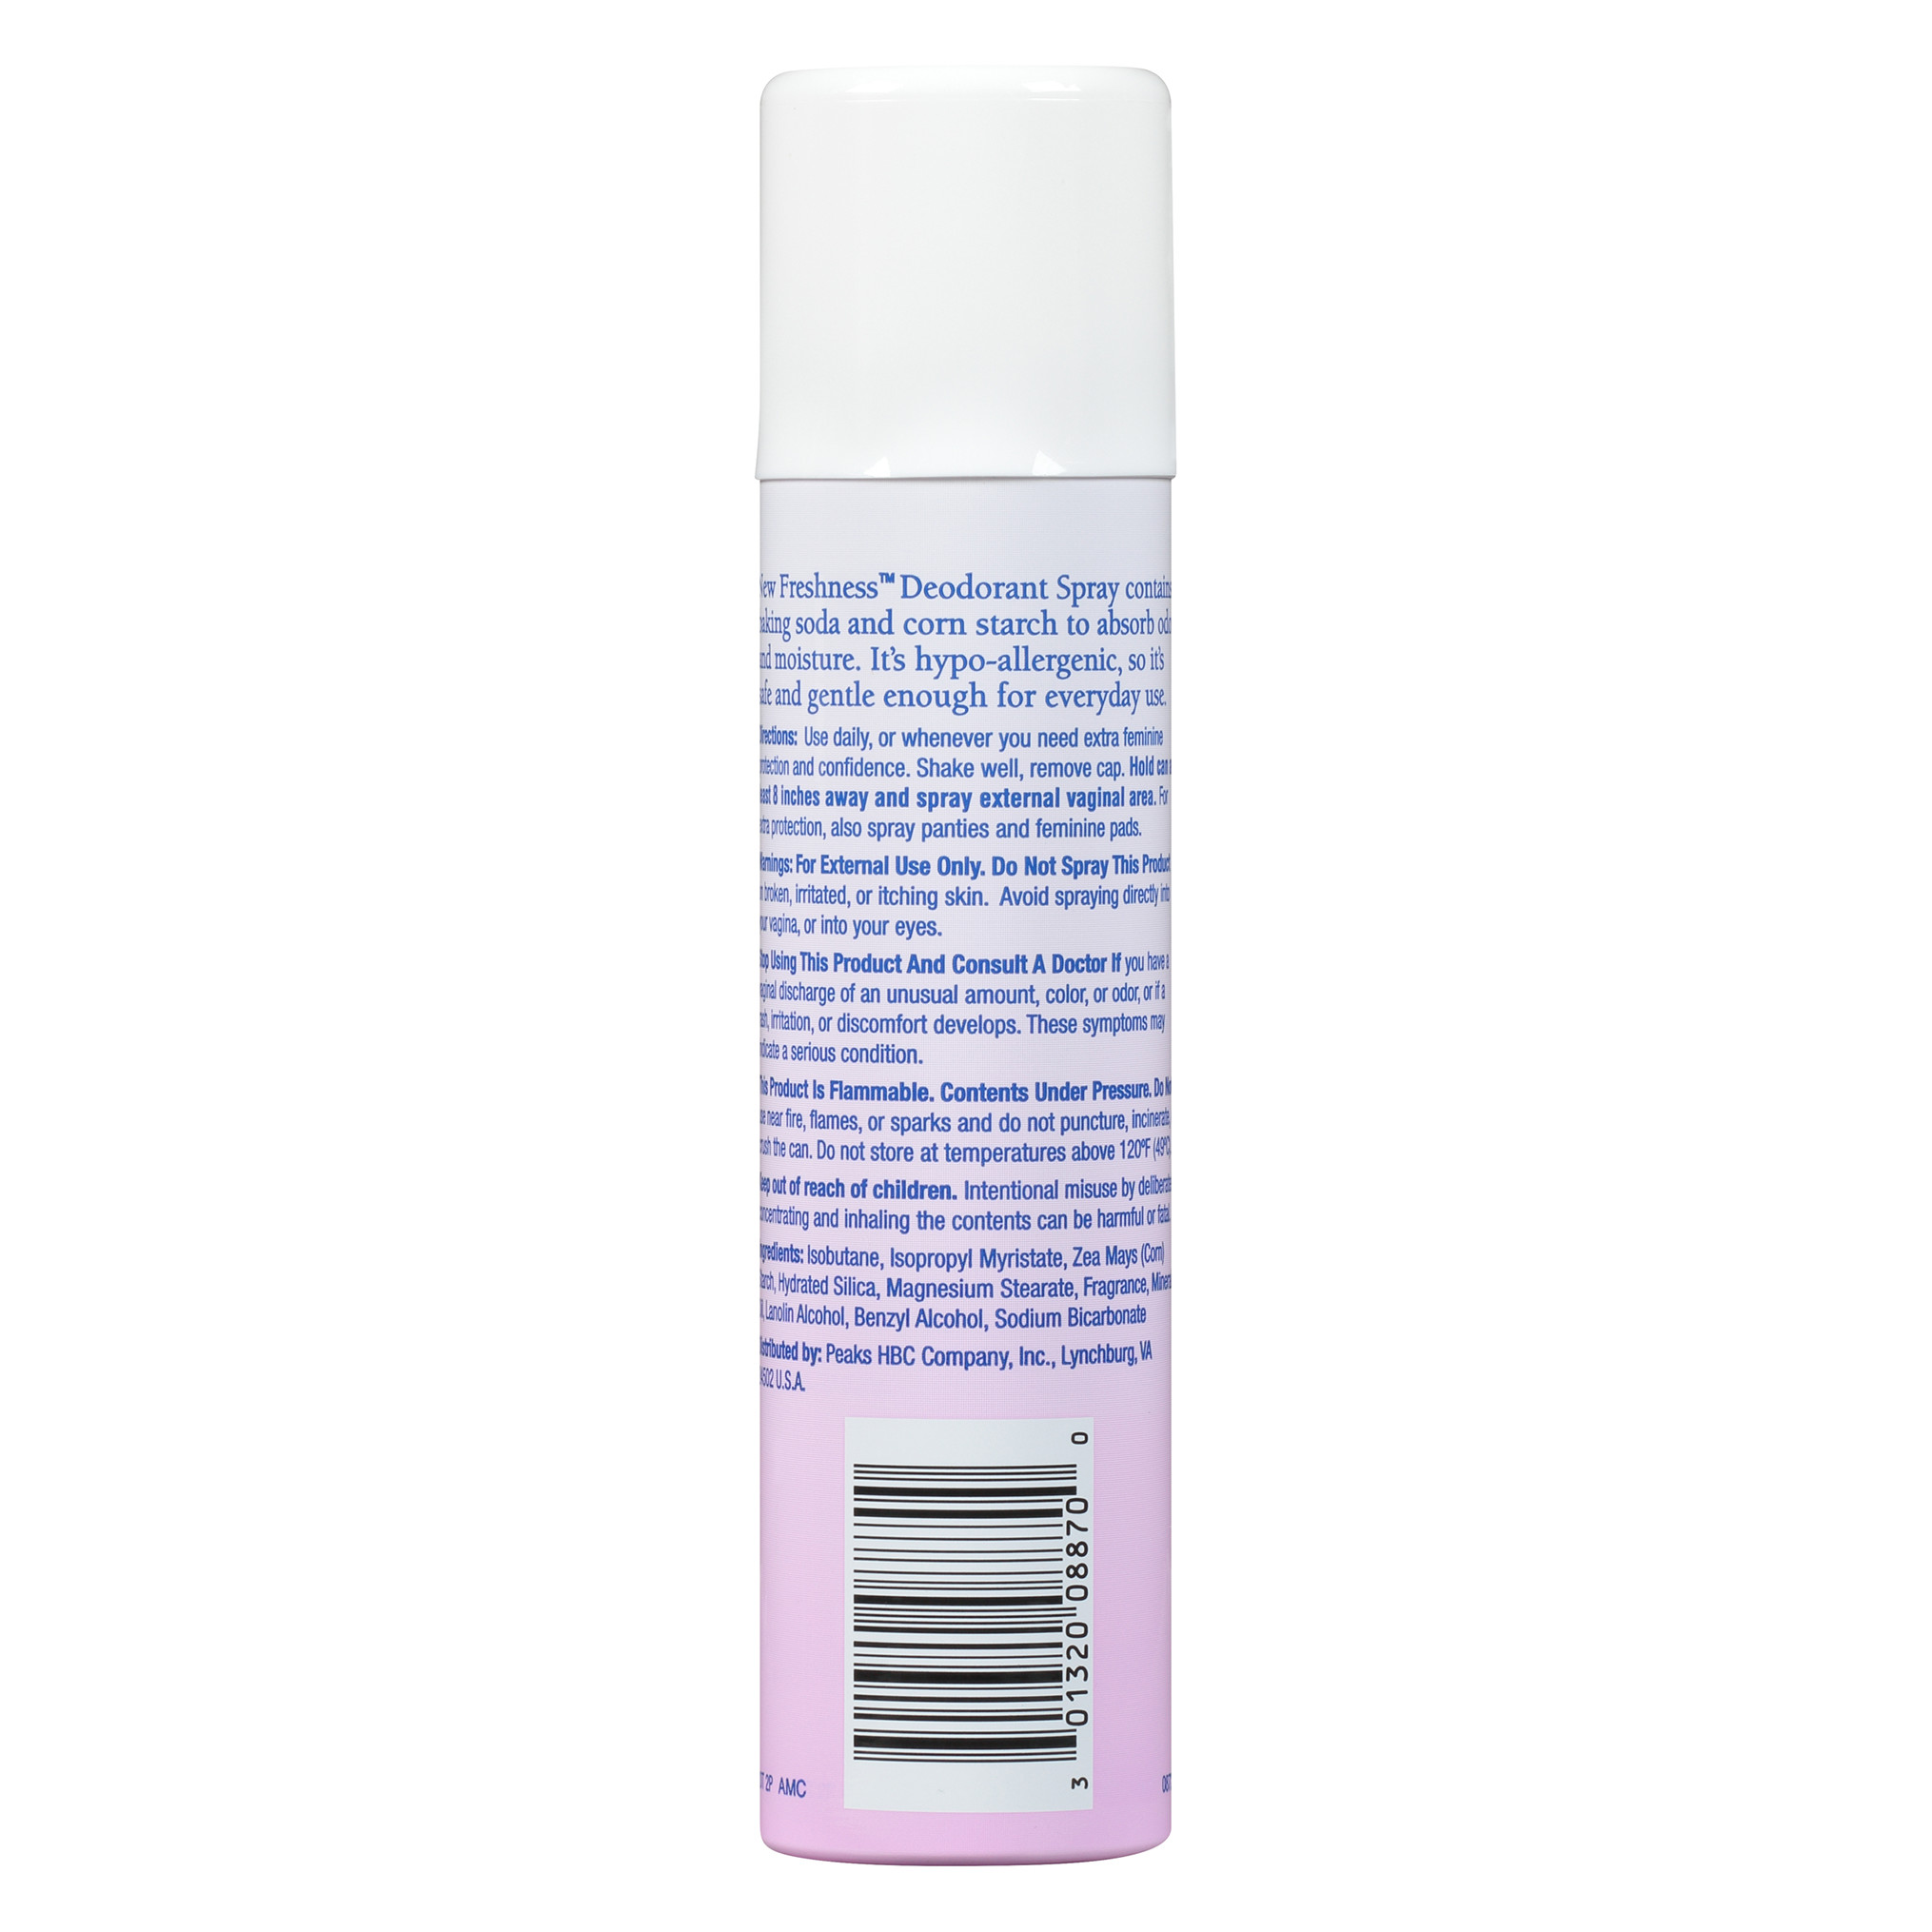 New Freshness Hypoallergenic Feminine Deodorant Spray, 2 Oz - image 5 of 12